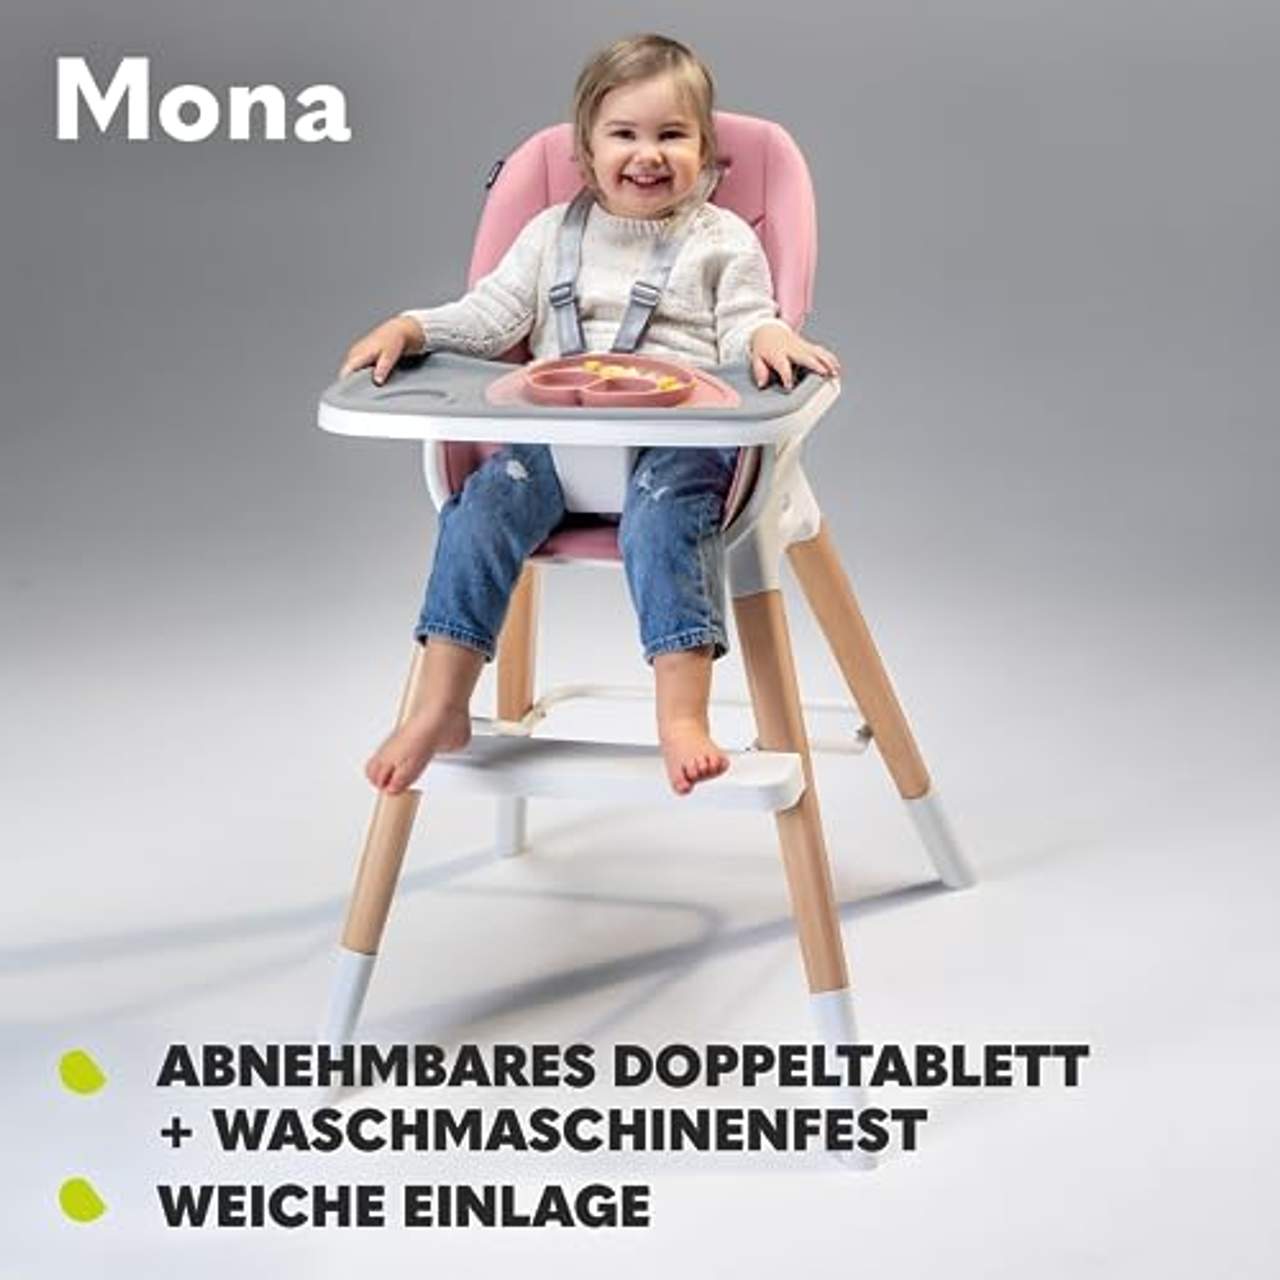 Lionelo Mona 4in1 Hochstuhl Baby Kinder Hochstuhl Reisestuhl